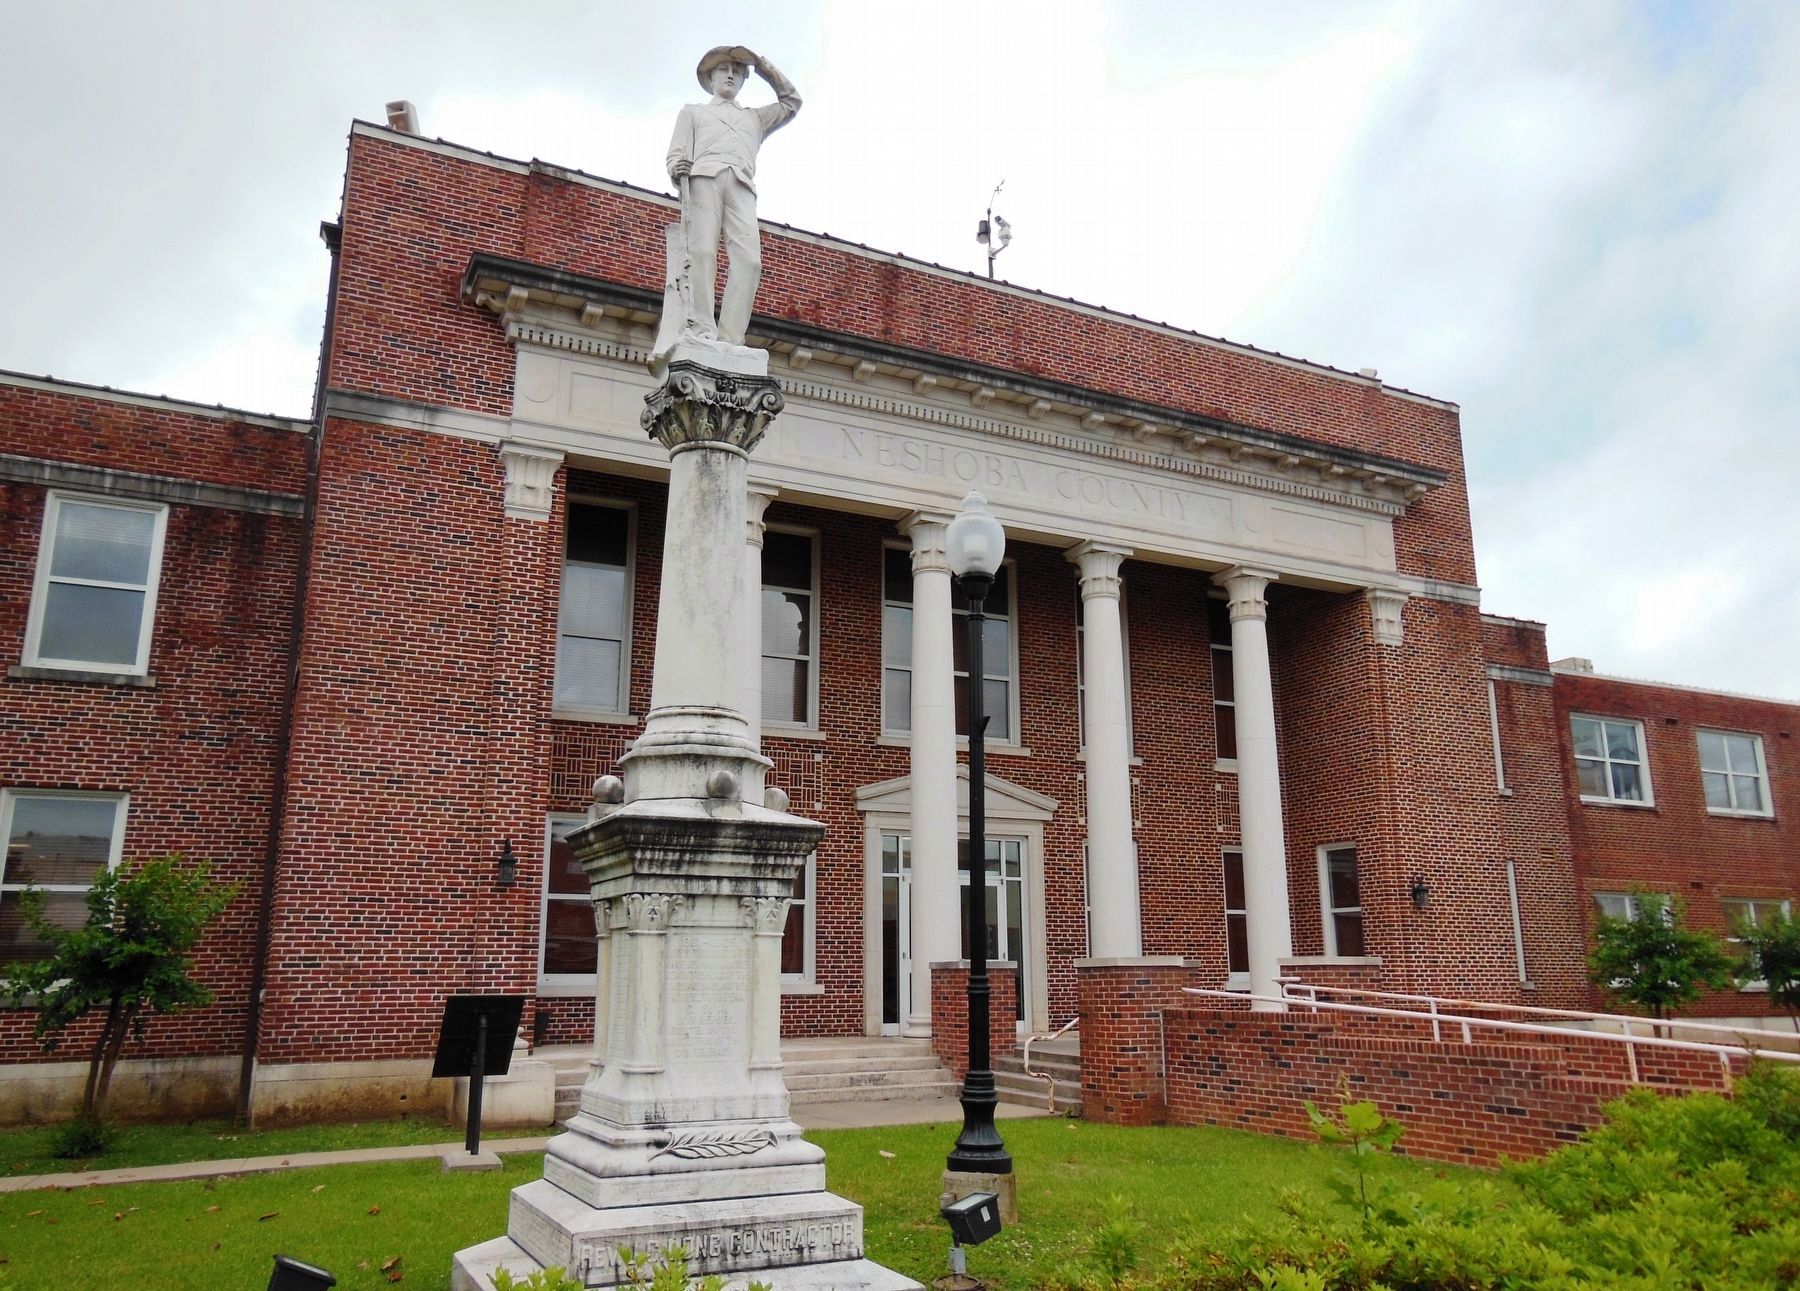 Neshoba County Confederate Monument (<i>Neshoba County Courthouse in background</i>) image. Click for full size.